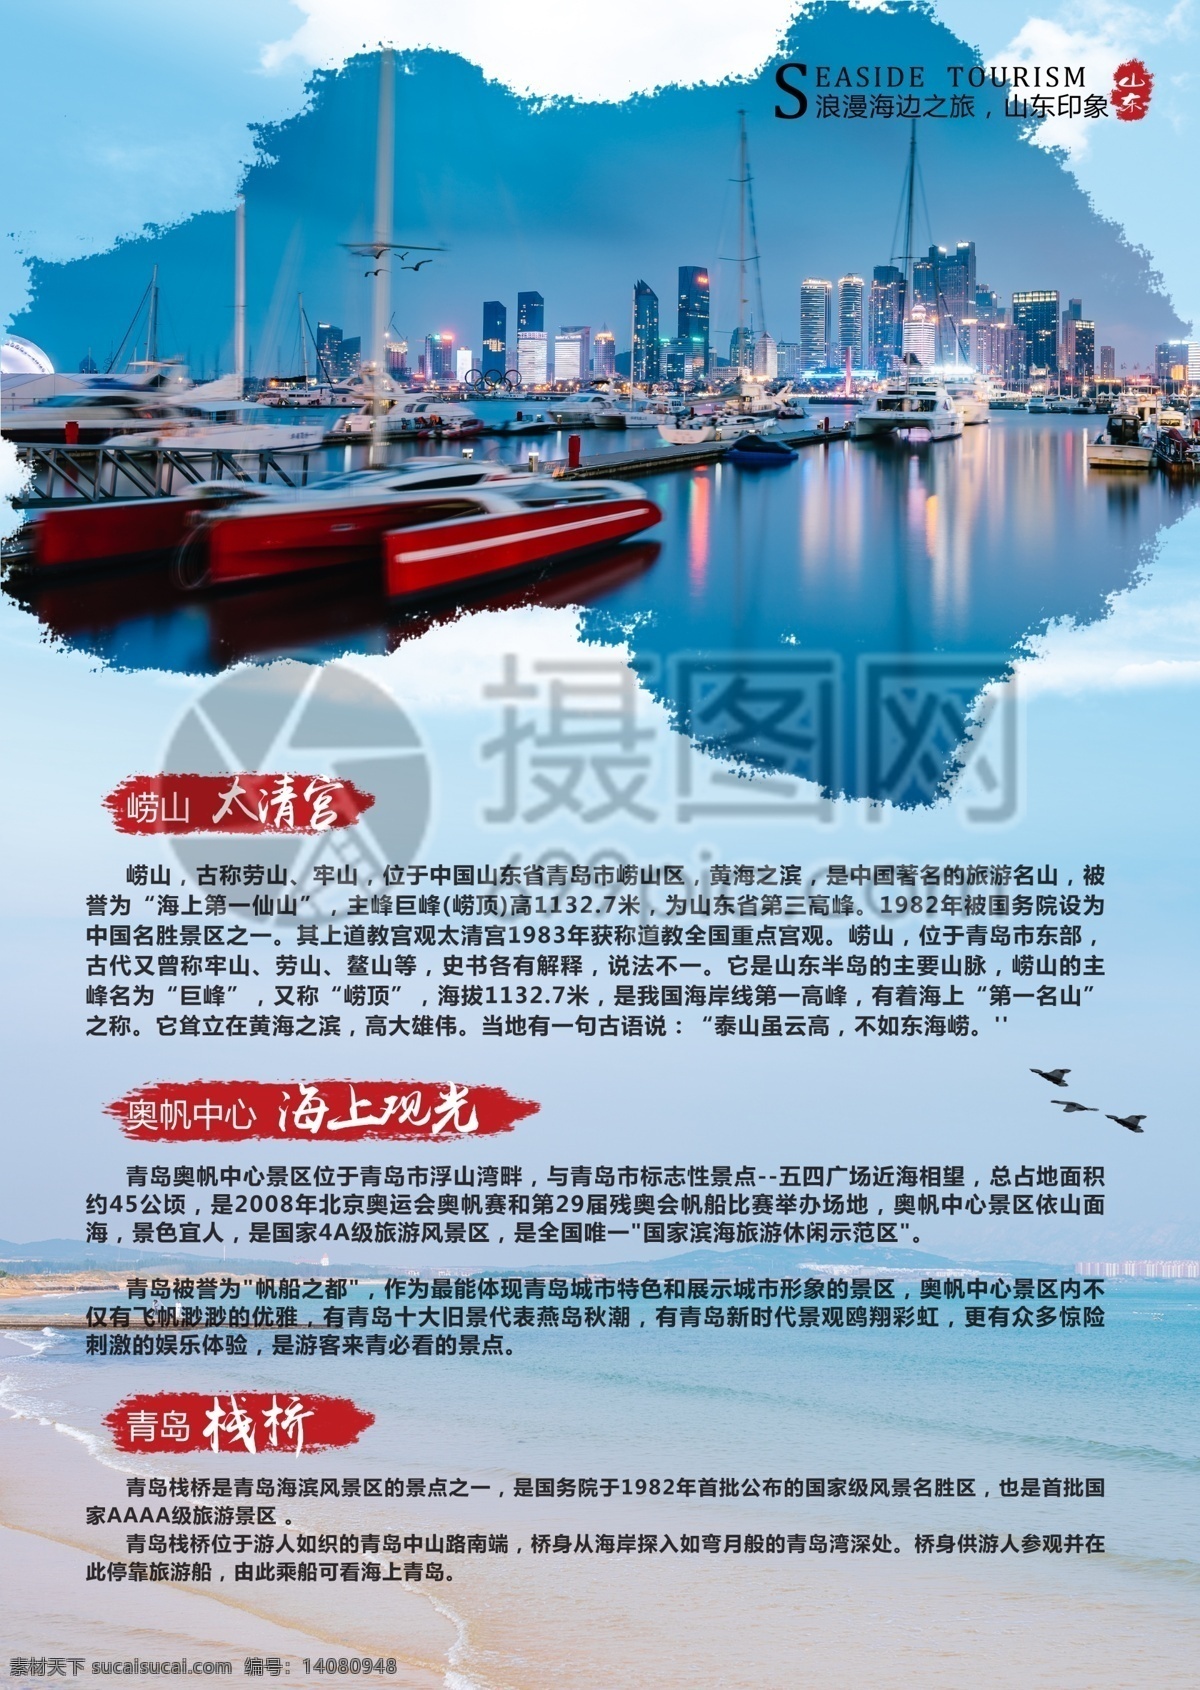 青岛旅游 宣传单 青岛 海边 国内游 蓝色 旅游 度假 旅游宣传 宣传单设计 假期 游玩